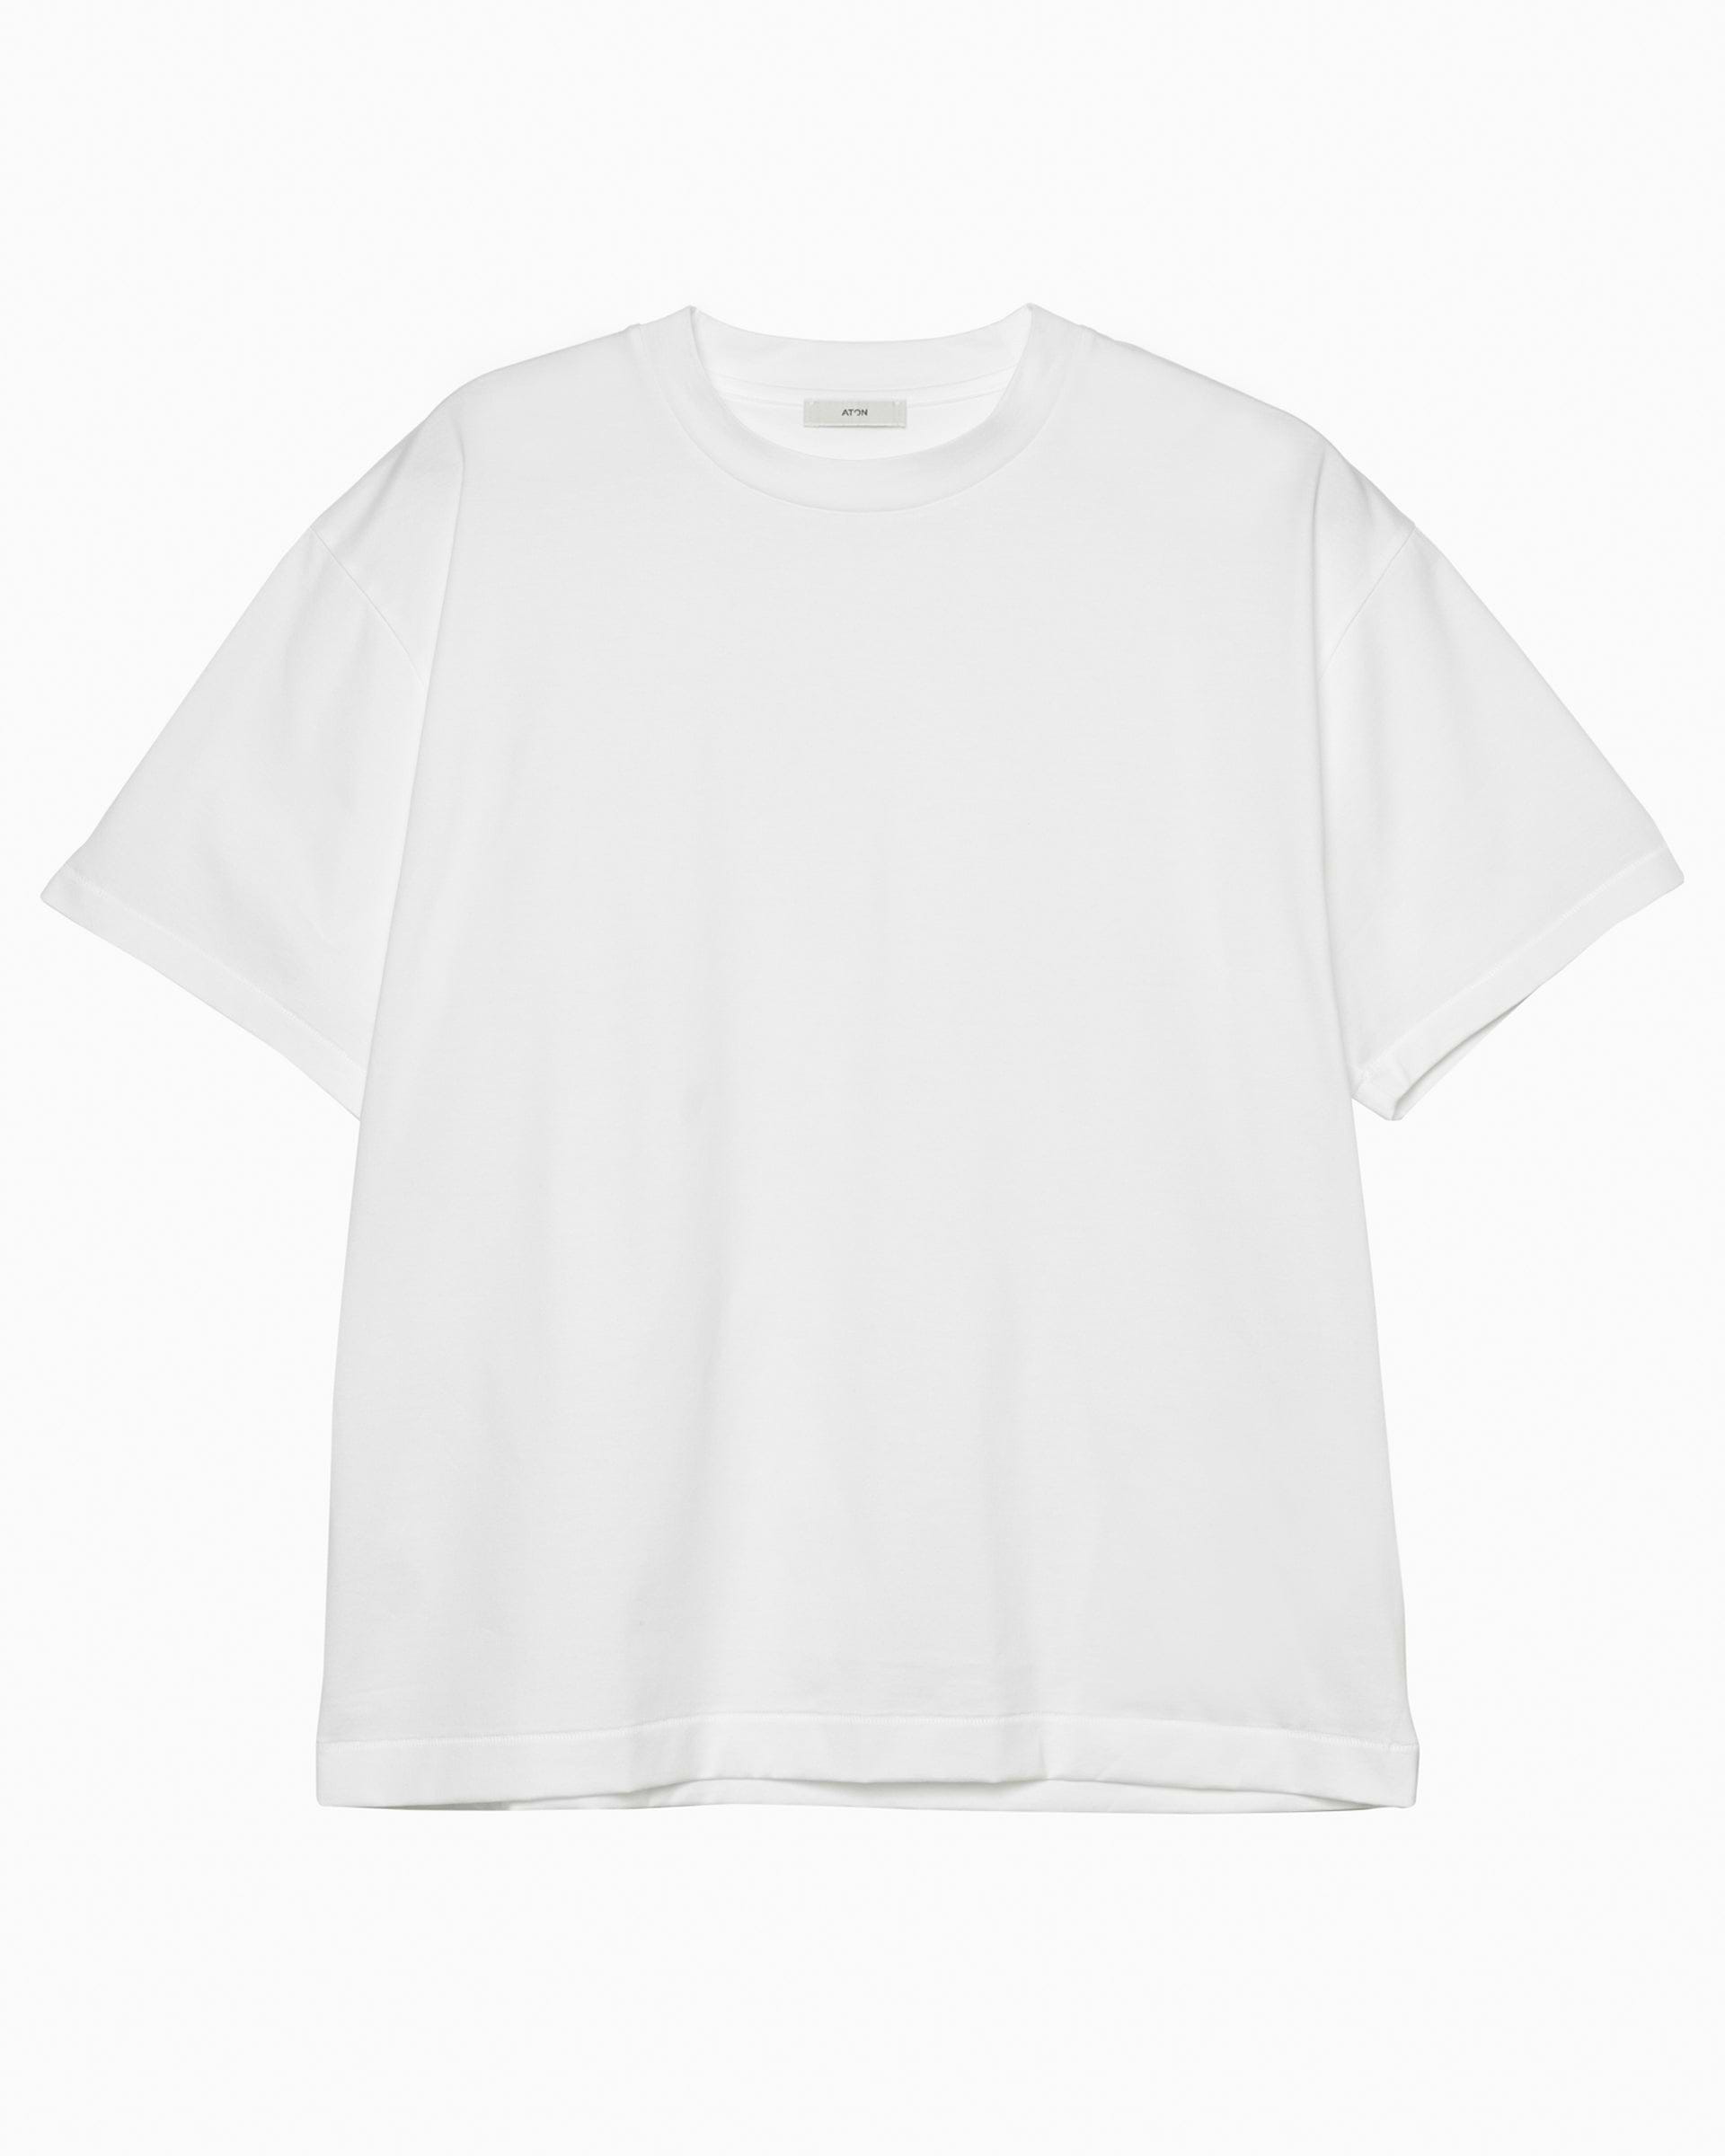 エイトン オーバーサイズ スビンコットン TシャツTシャツ/カットソー(七分/長袖)